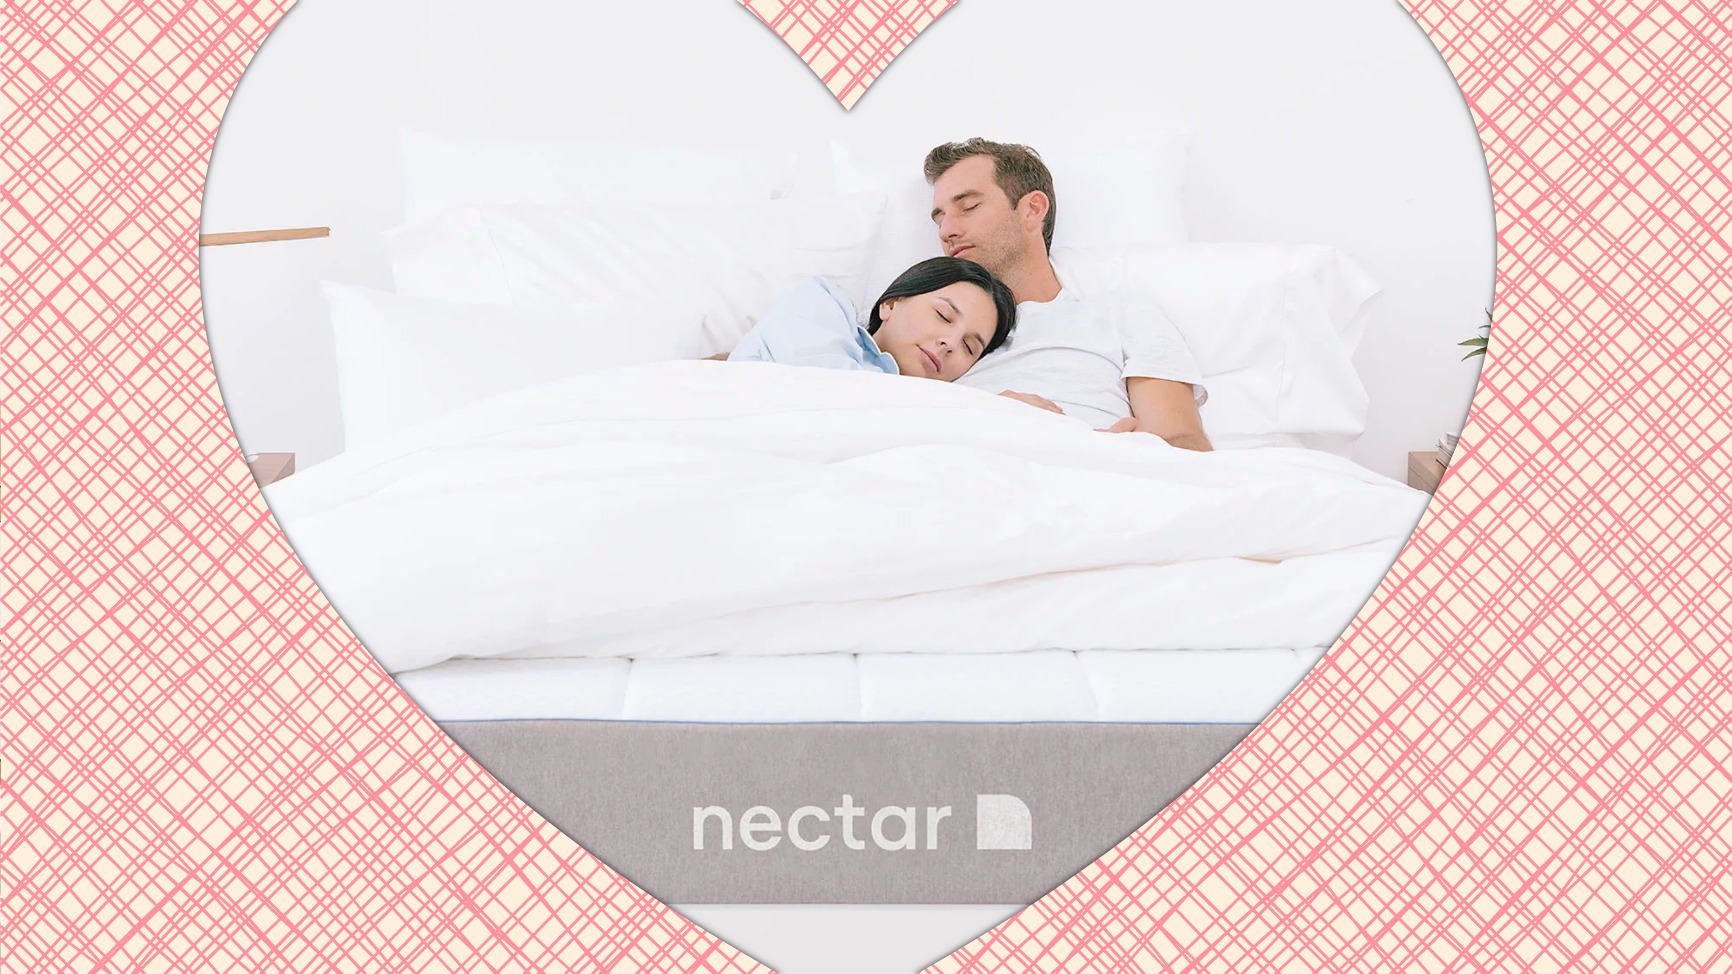 Nectar Sleep Giveaway